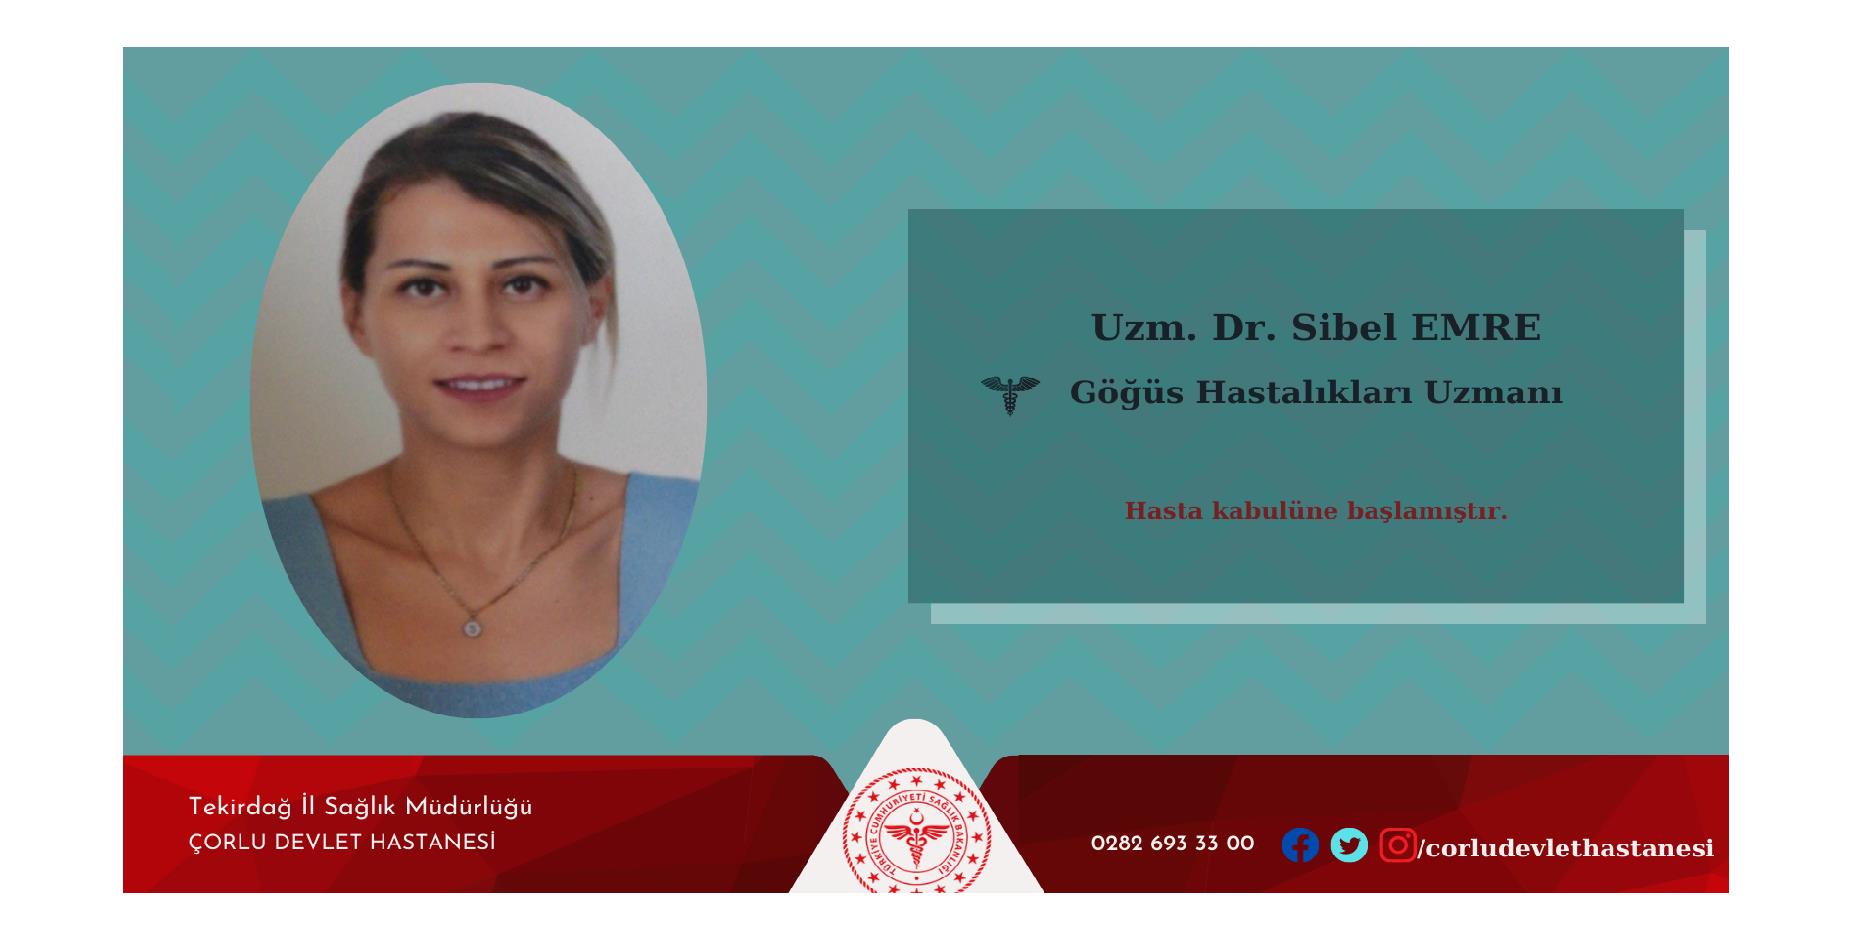 Göğüs Hastalıkları Uzmanı Uzm. Dr. Sibel EMRE hasta kabulüne başlamıştır.